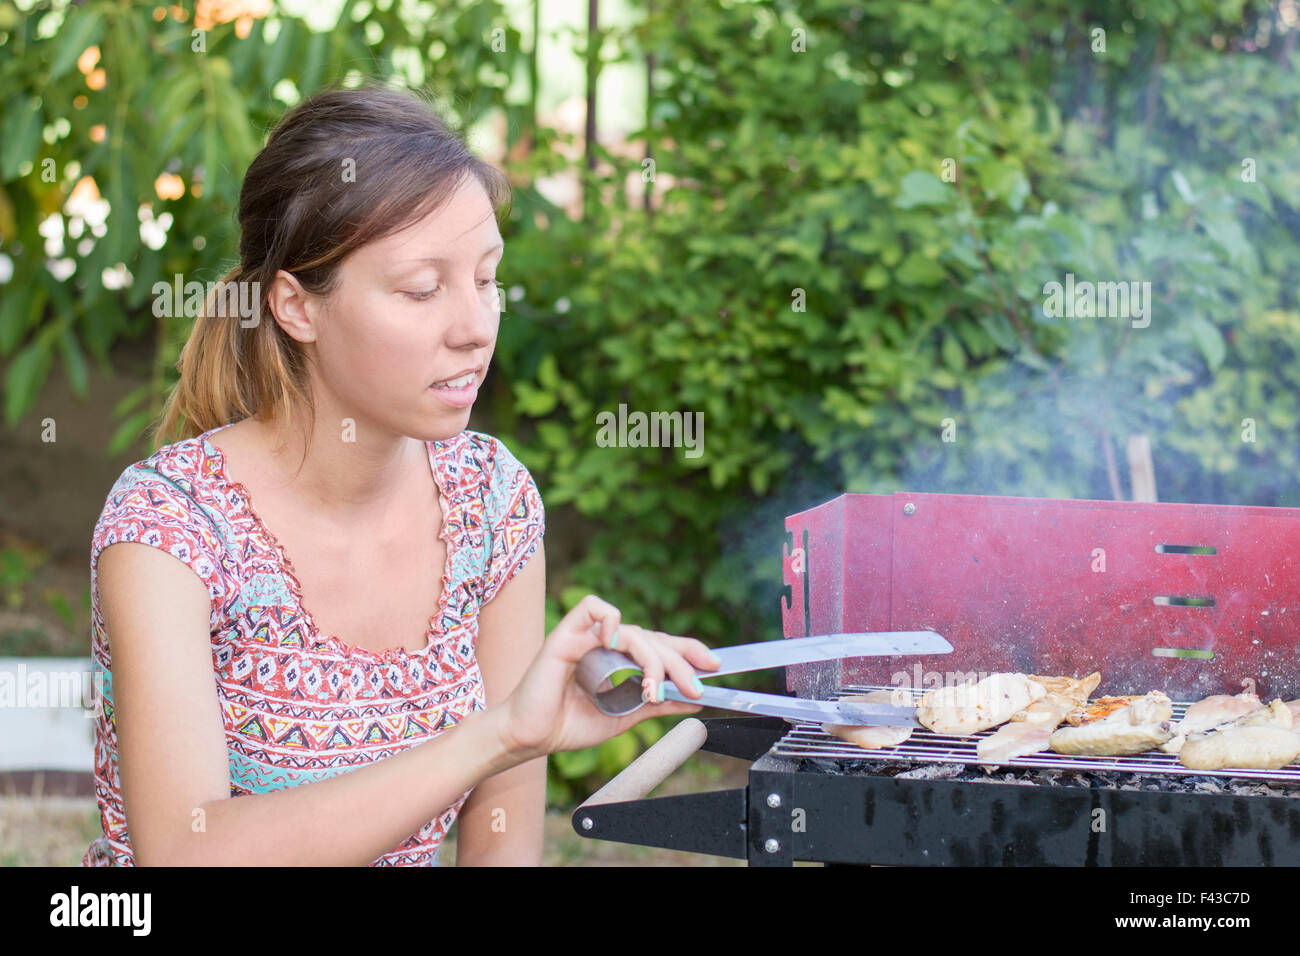 Bel giovane donna prepara barbecue nel cortile posteriore Foto Stock